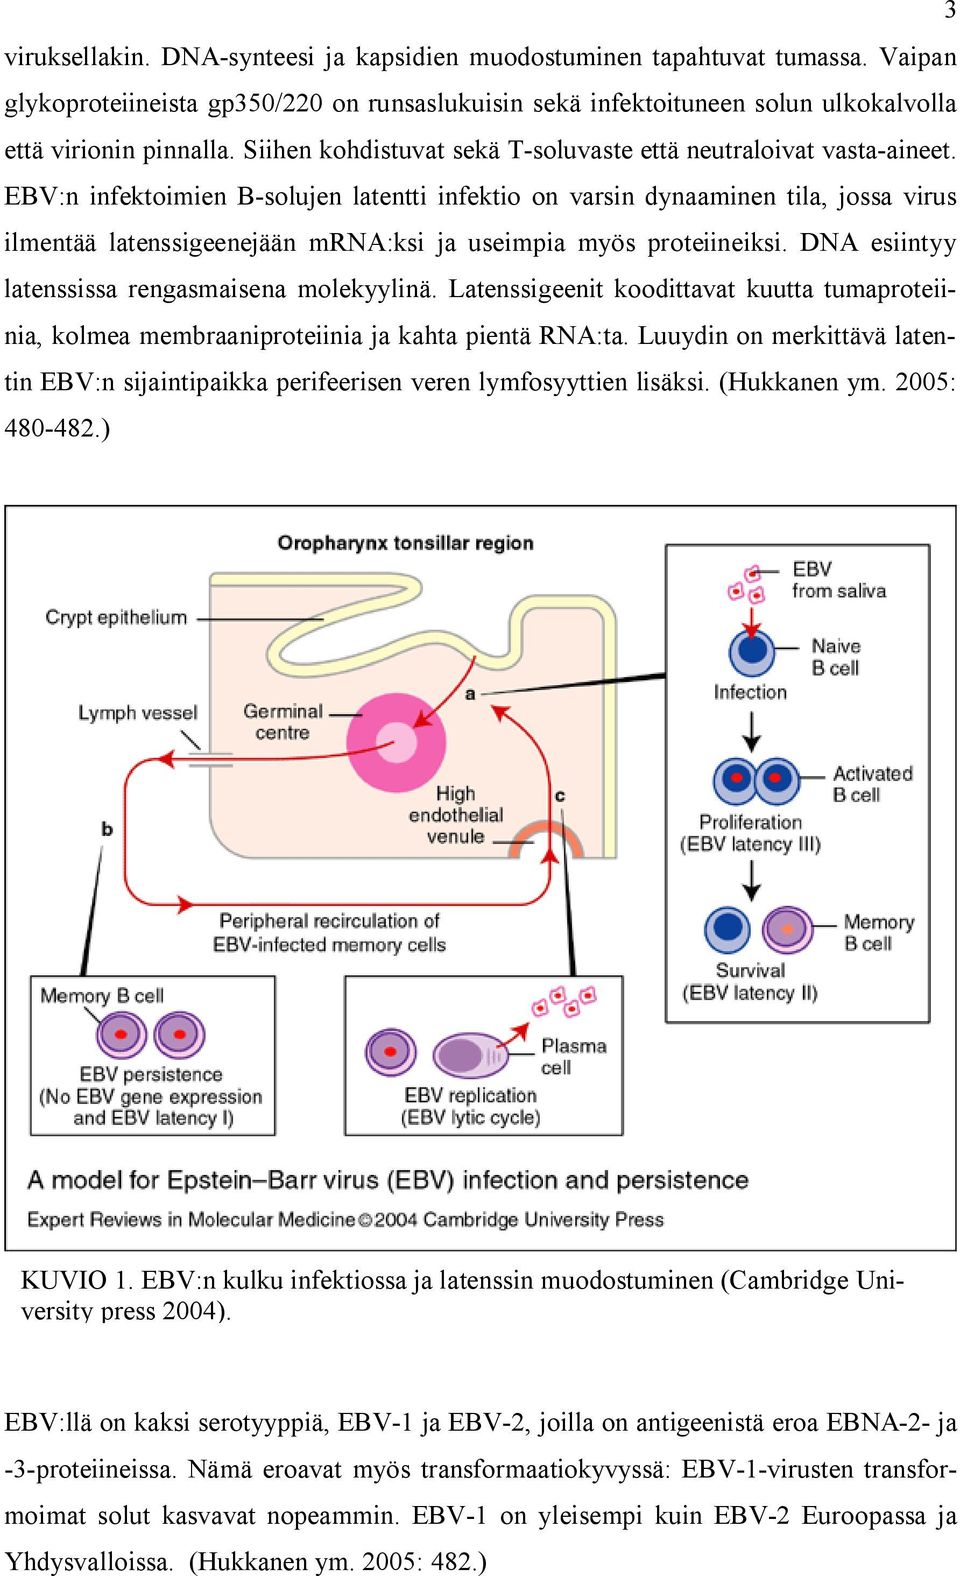 EBV:n infektoimien B-solujen latentti infektio on varsin dynaaminen tila, jossa virus ilmentää latenssigeenejään mrna:ksi ja useimpia myös proteiineiksi.